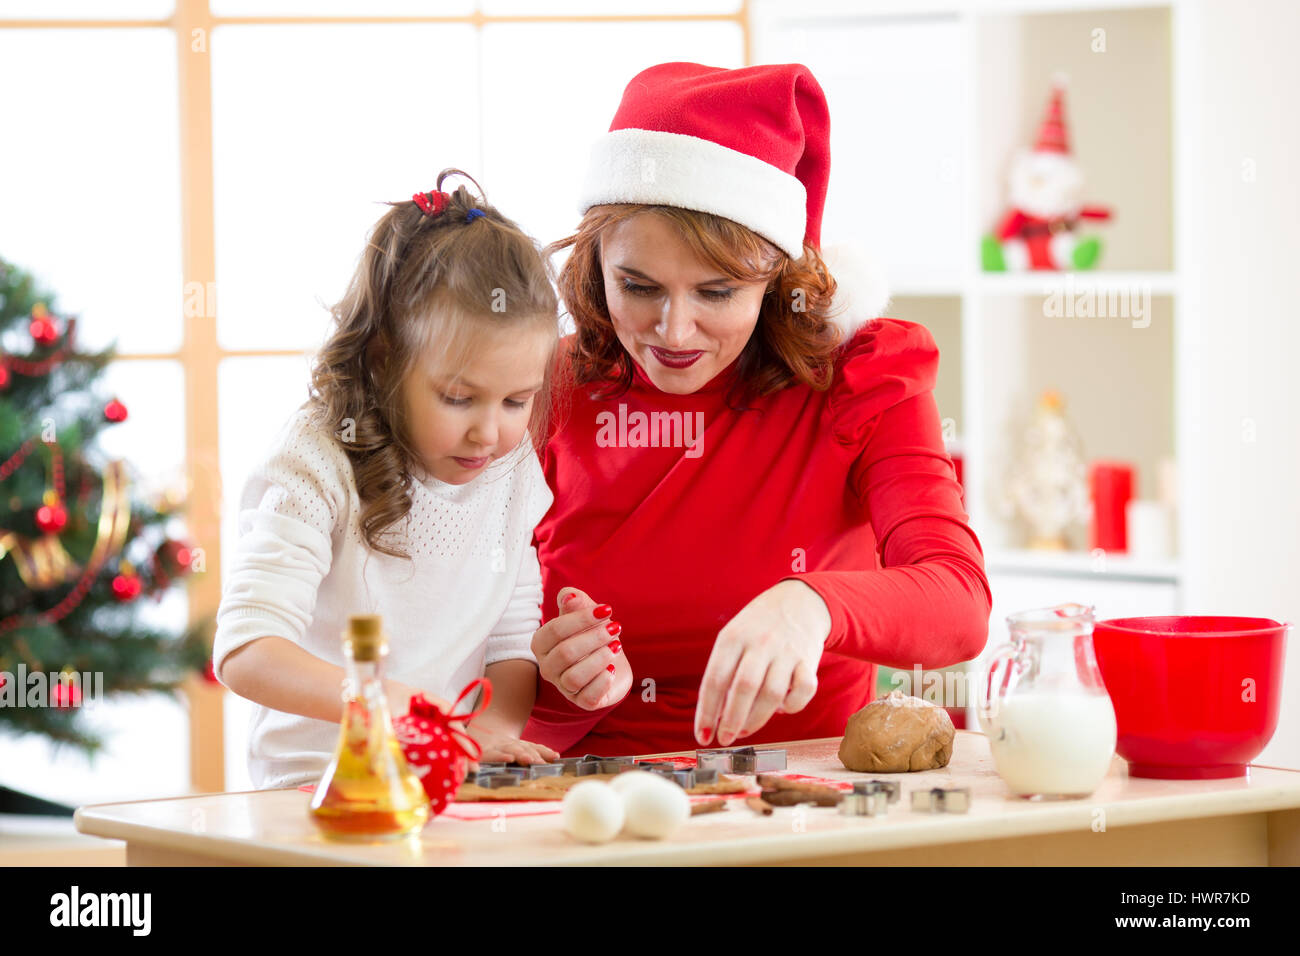 Niño feliz chica y la madre de X-mas para hornear galletas juntos en la habitación de decoración navideña Foto de stock